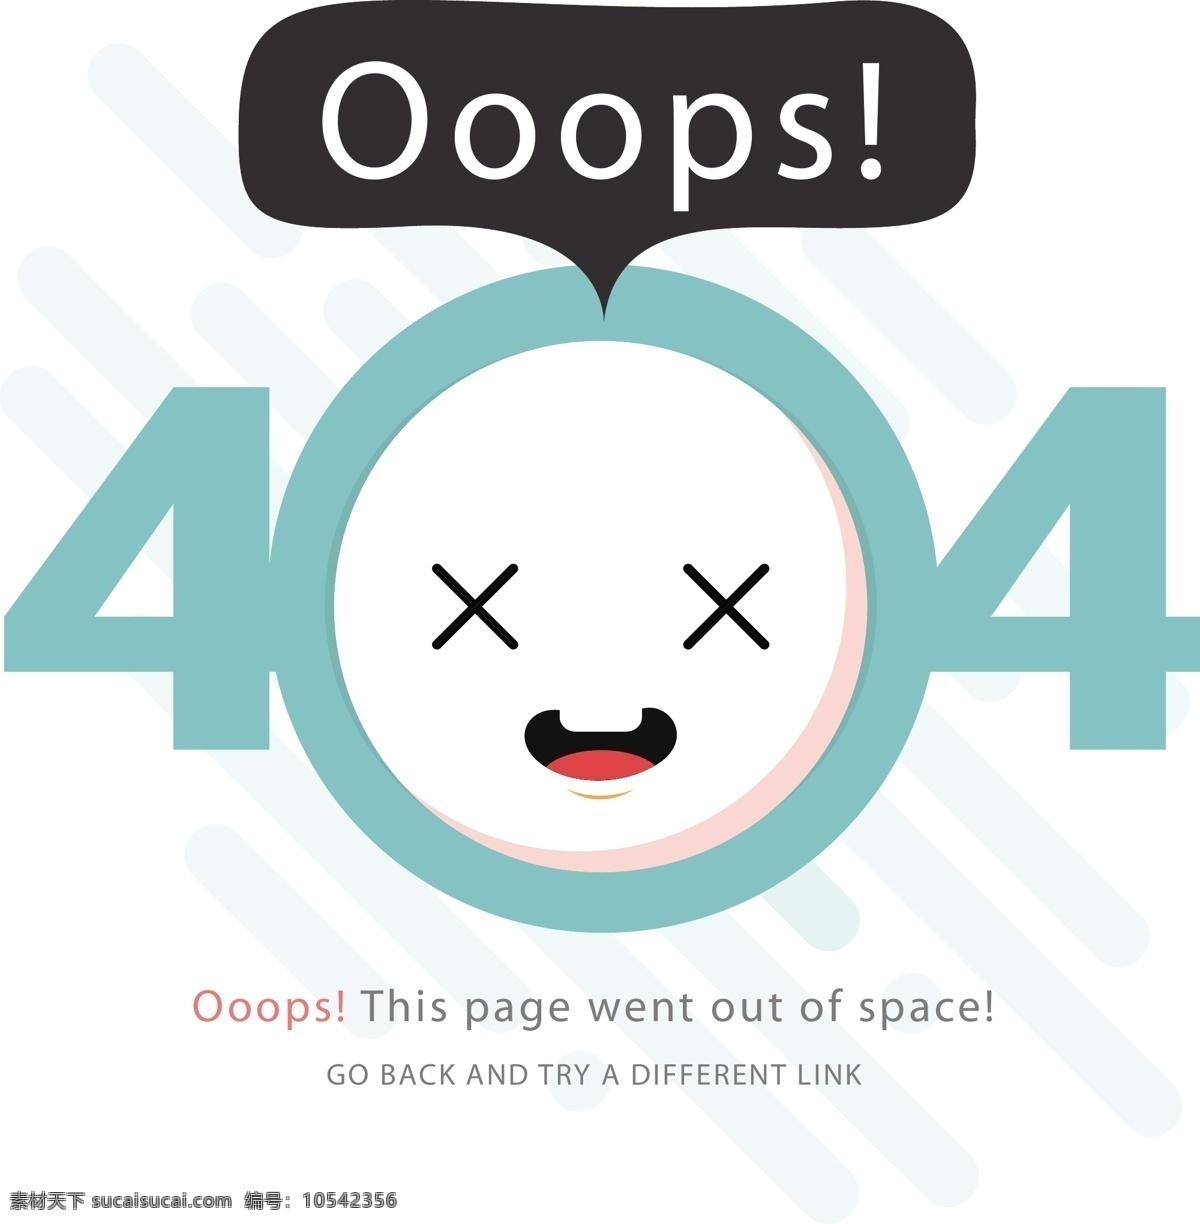 错误 页 表情 艺术 字 网页 错误页 404表情 app 报 错 界面 合集 缺失页 浏览器 线性图标 404sorry 空 状态 返回 可爱404 卡通 标签